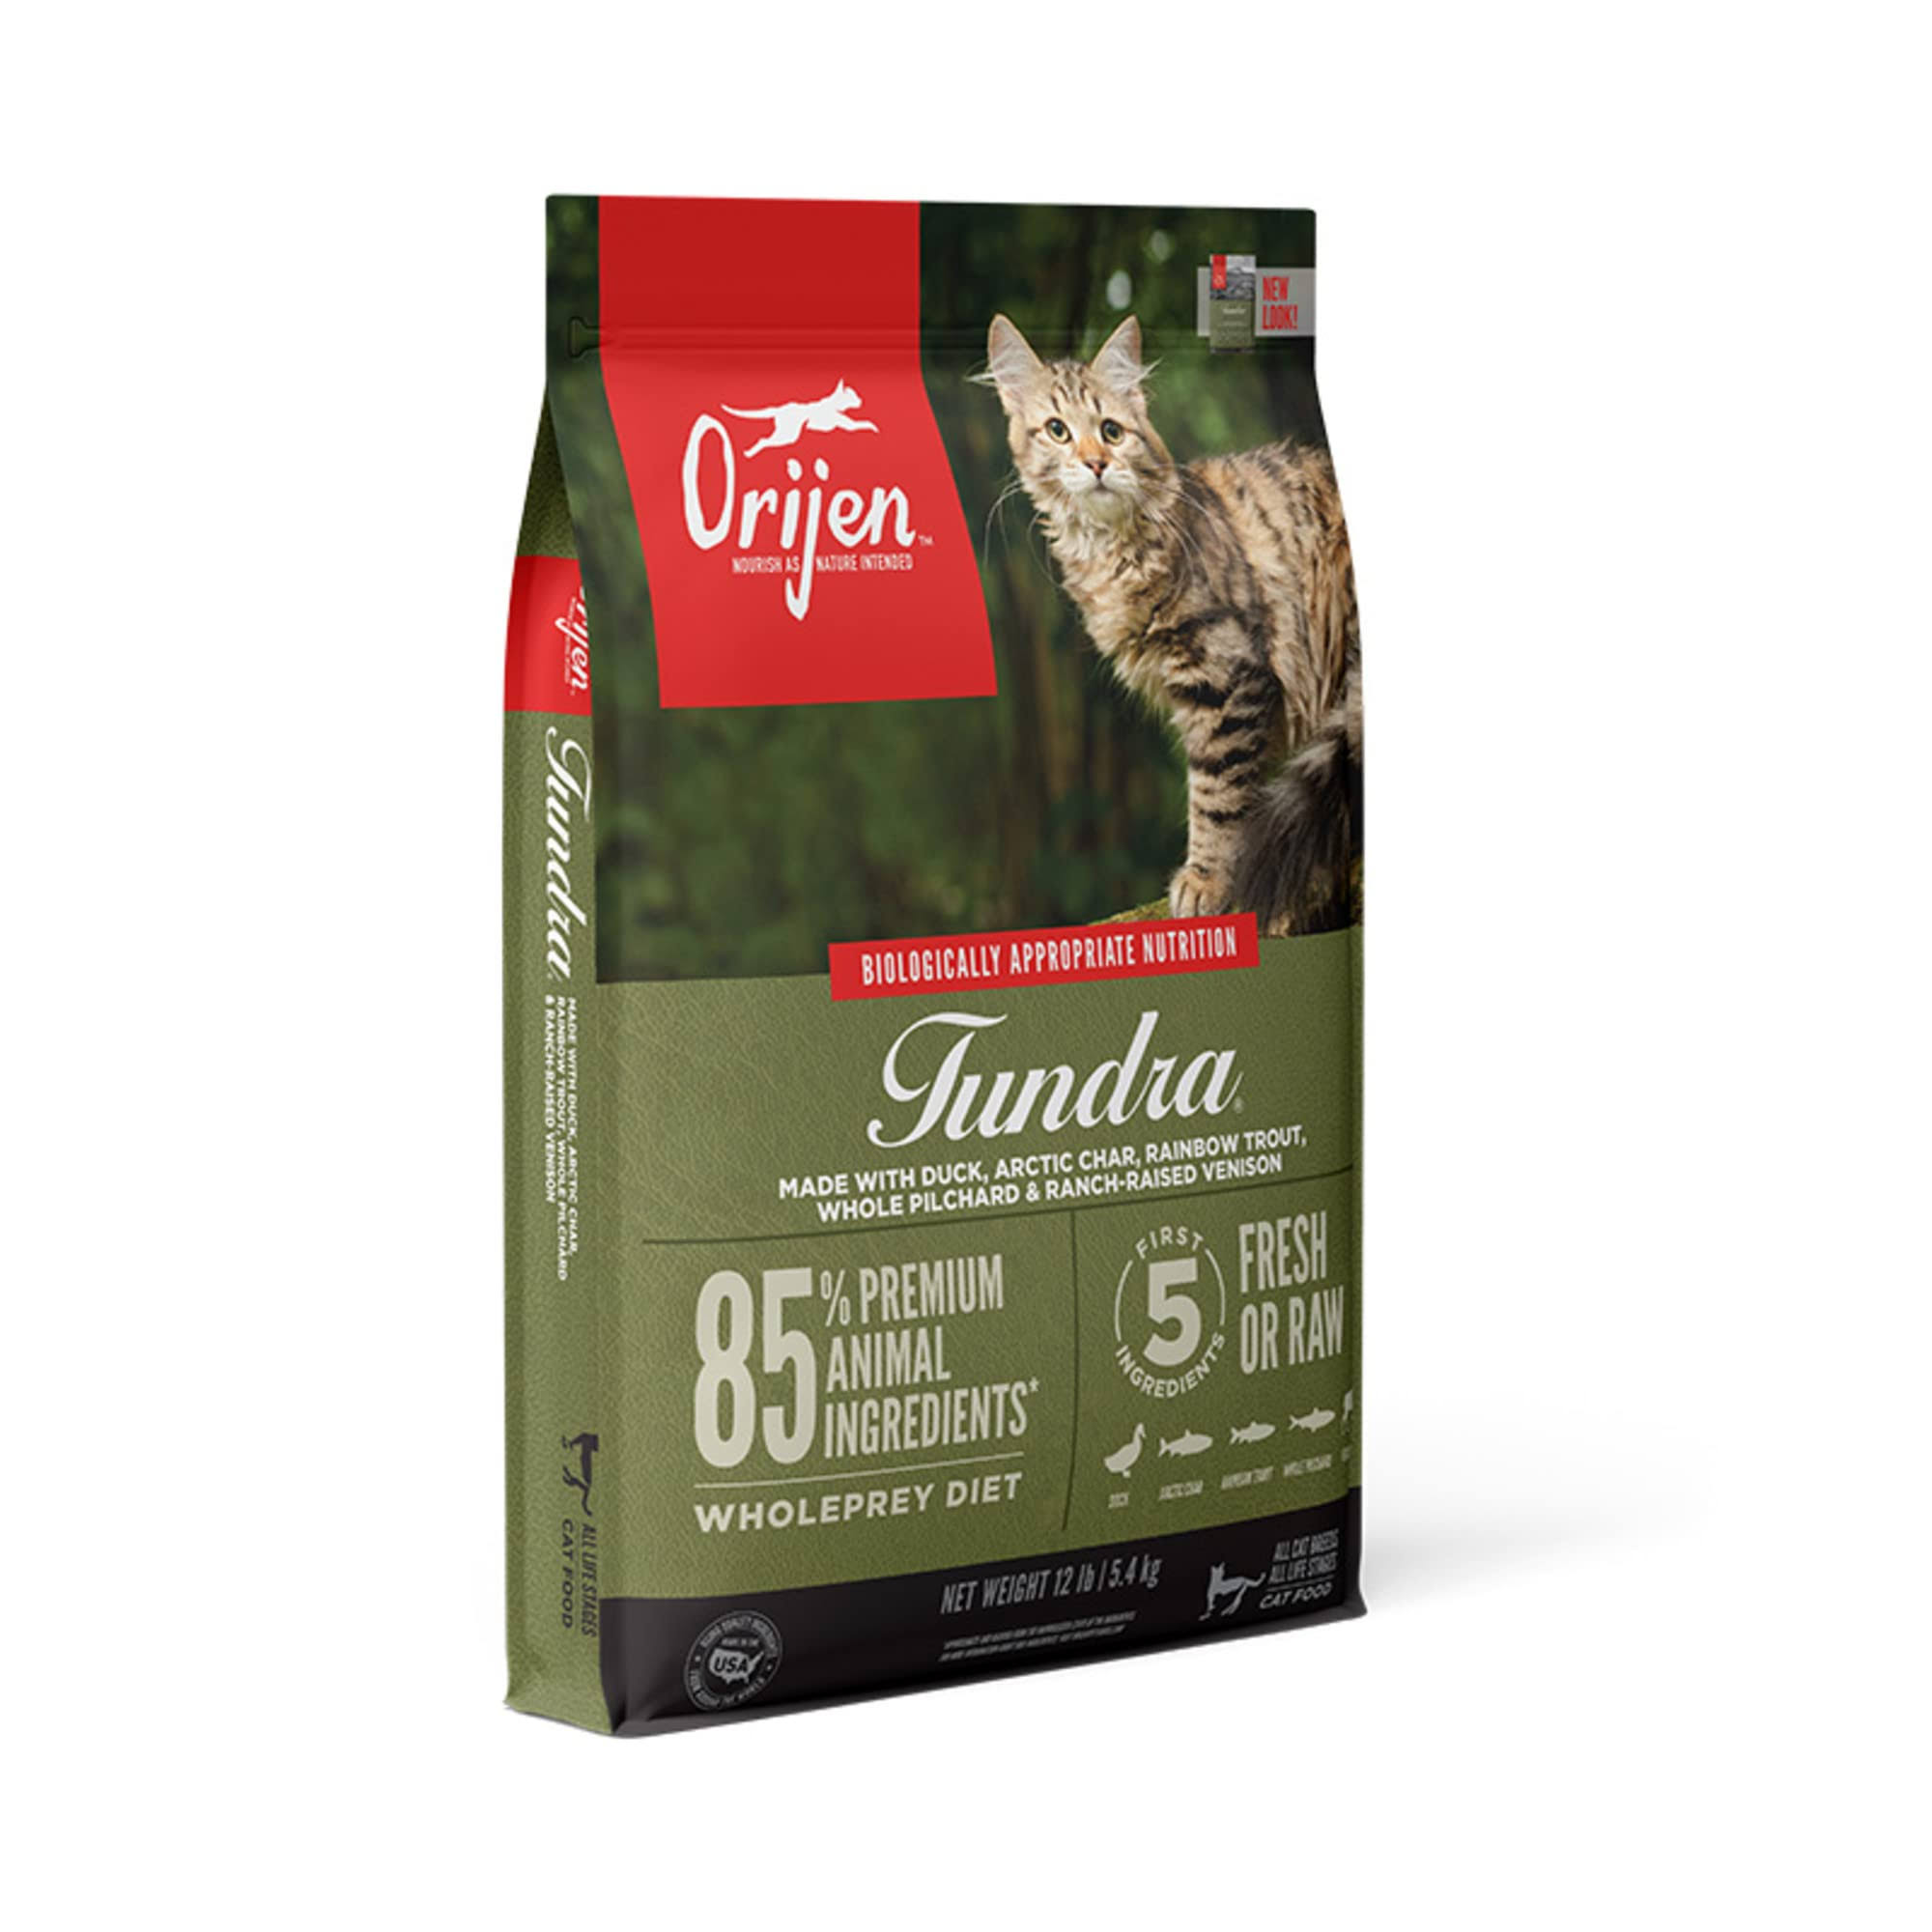 Orijen Tundra Grain-Free Dry Cat Food - 12 lb. Bag